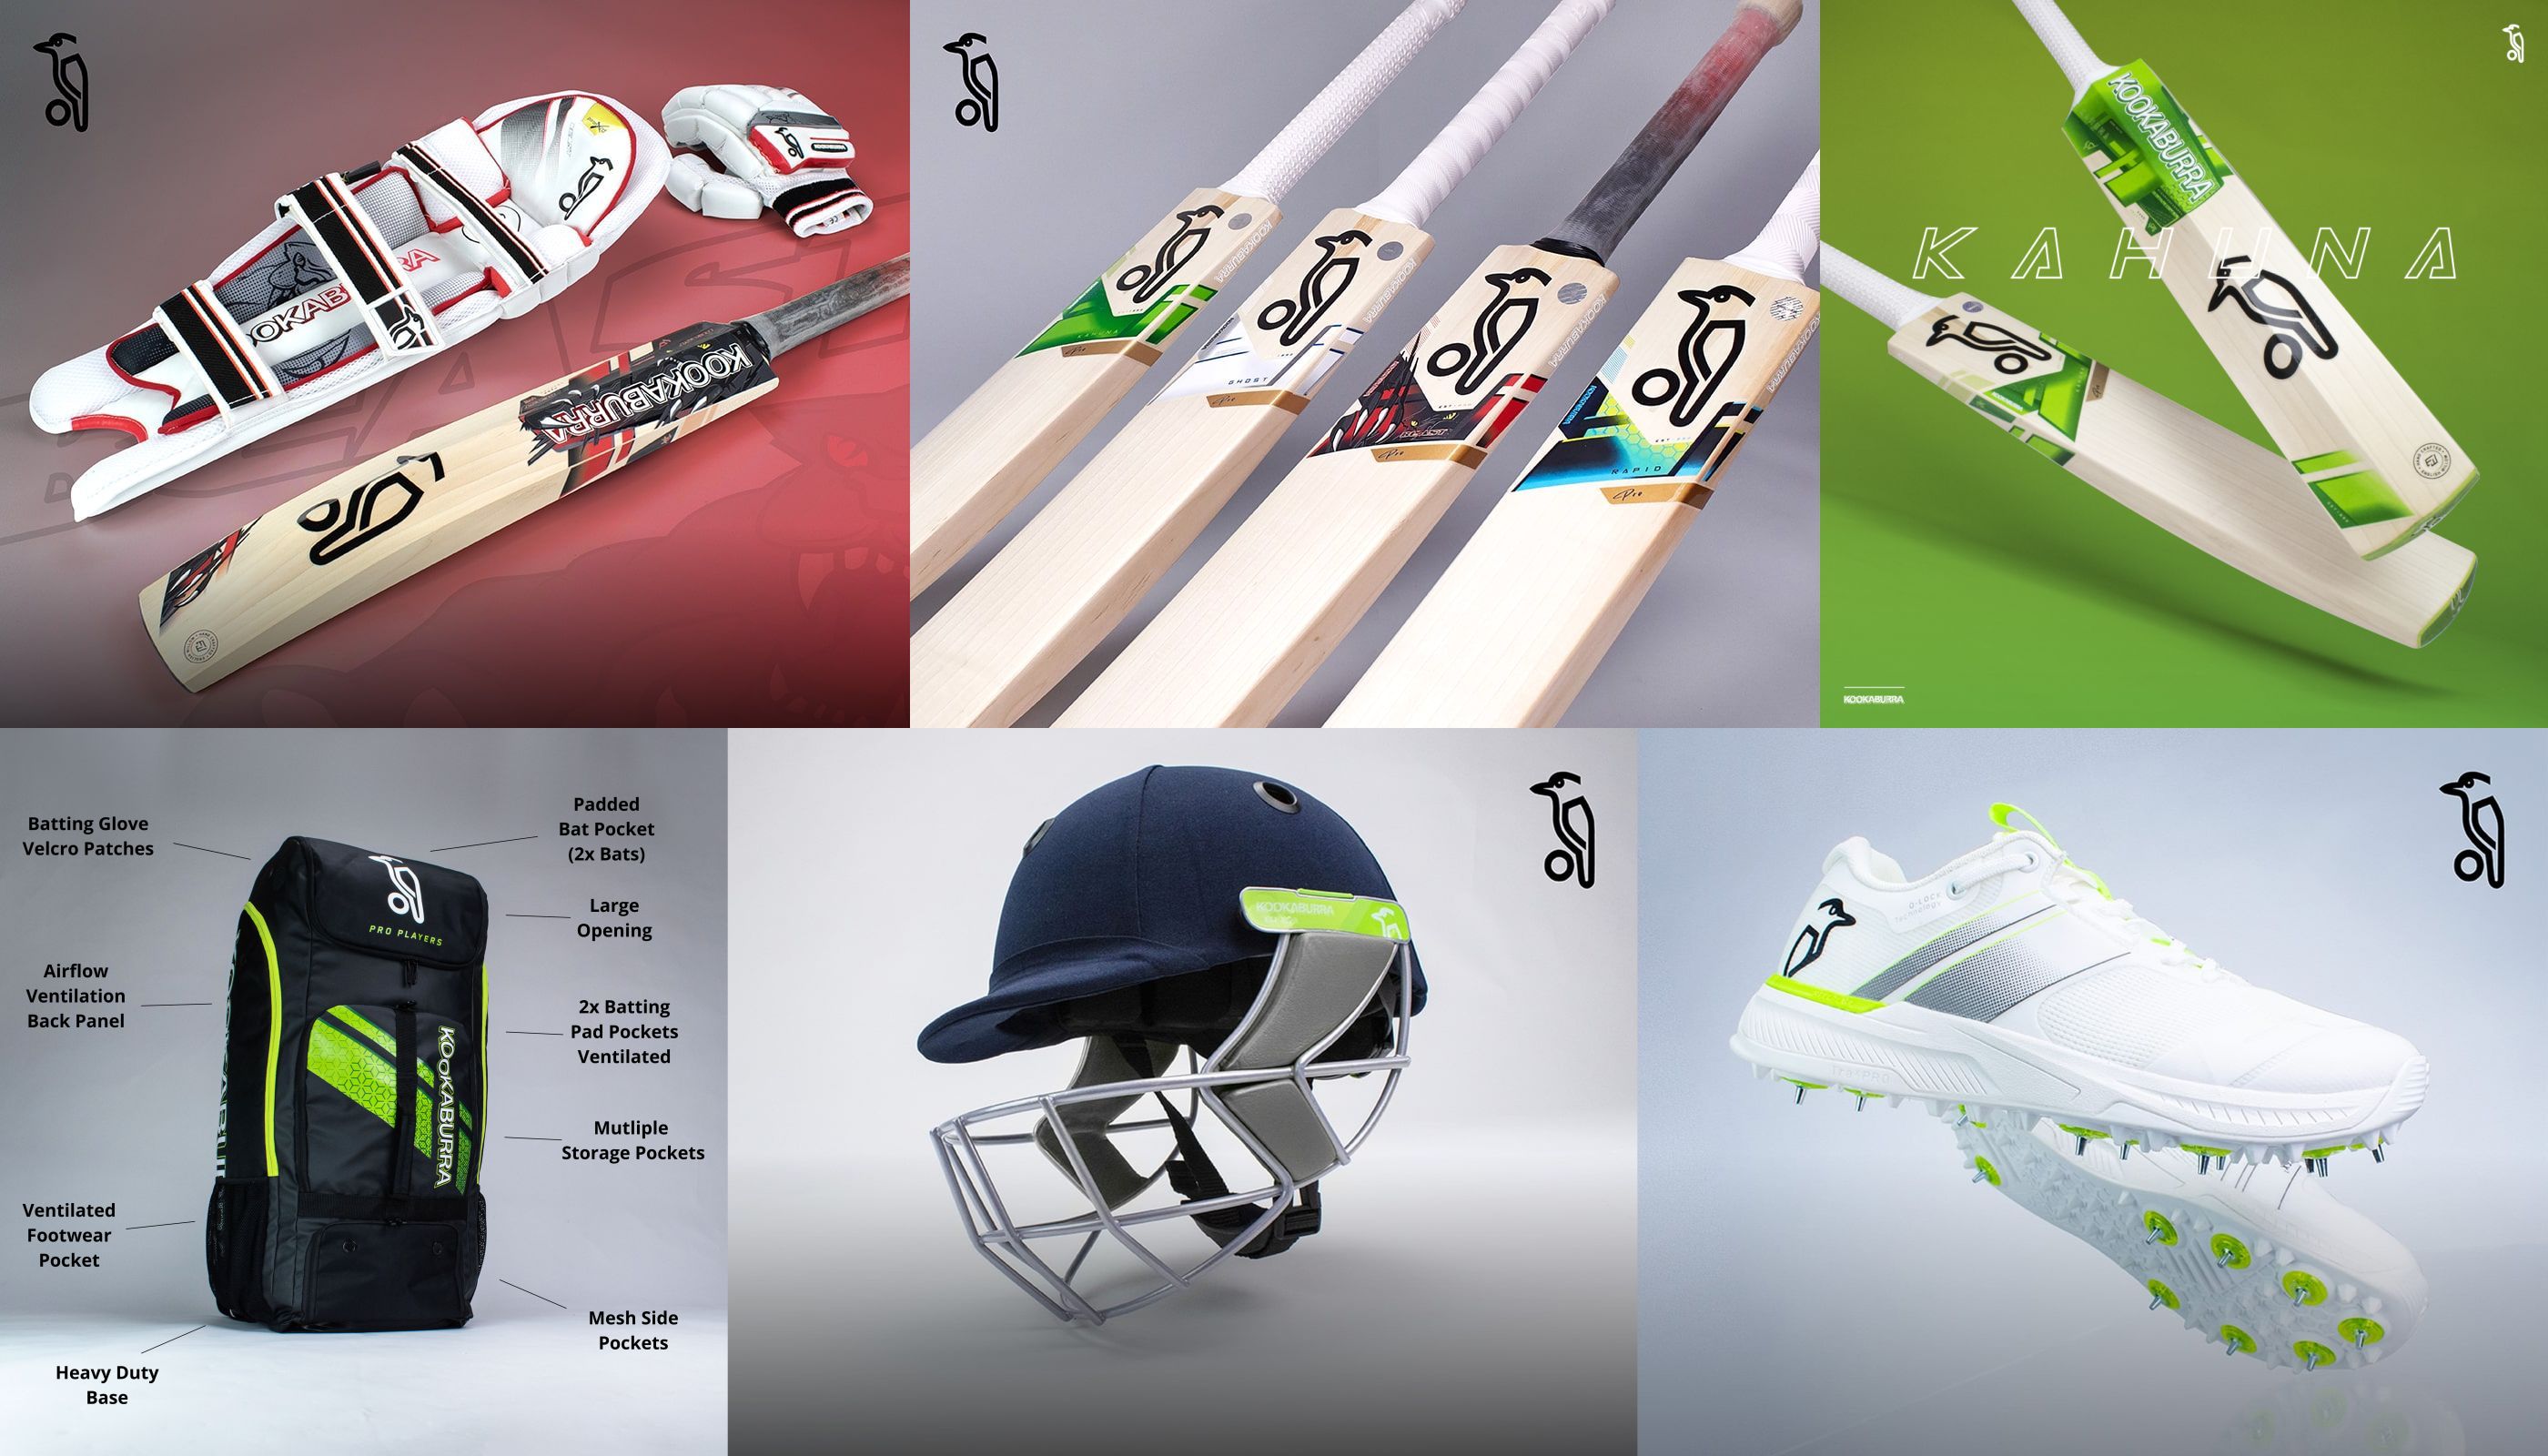 Cricket Equipment, Cricket Bats, Cricket Shoes, Helmets, Junior Cricket  Equipment from Talent Equipment